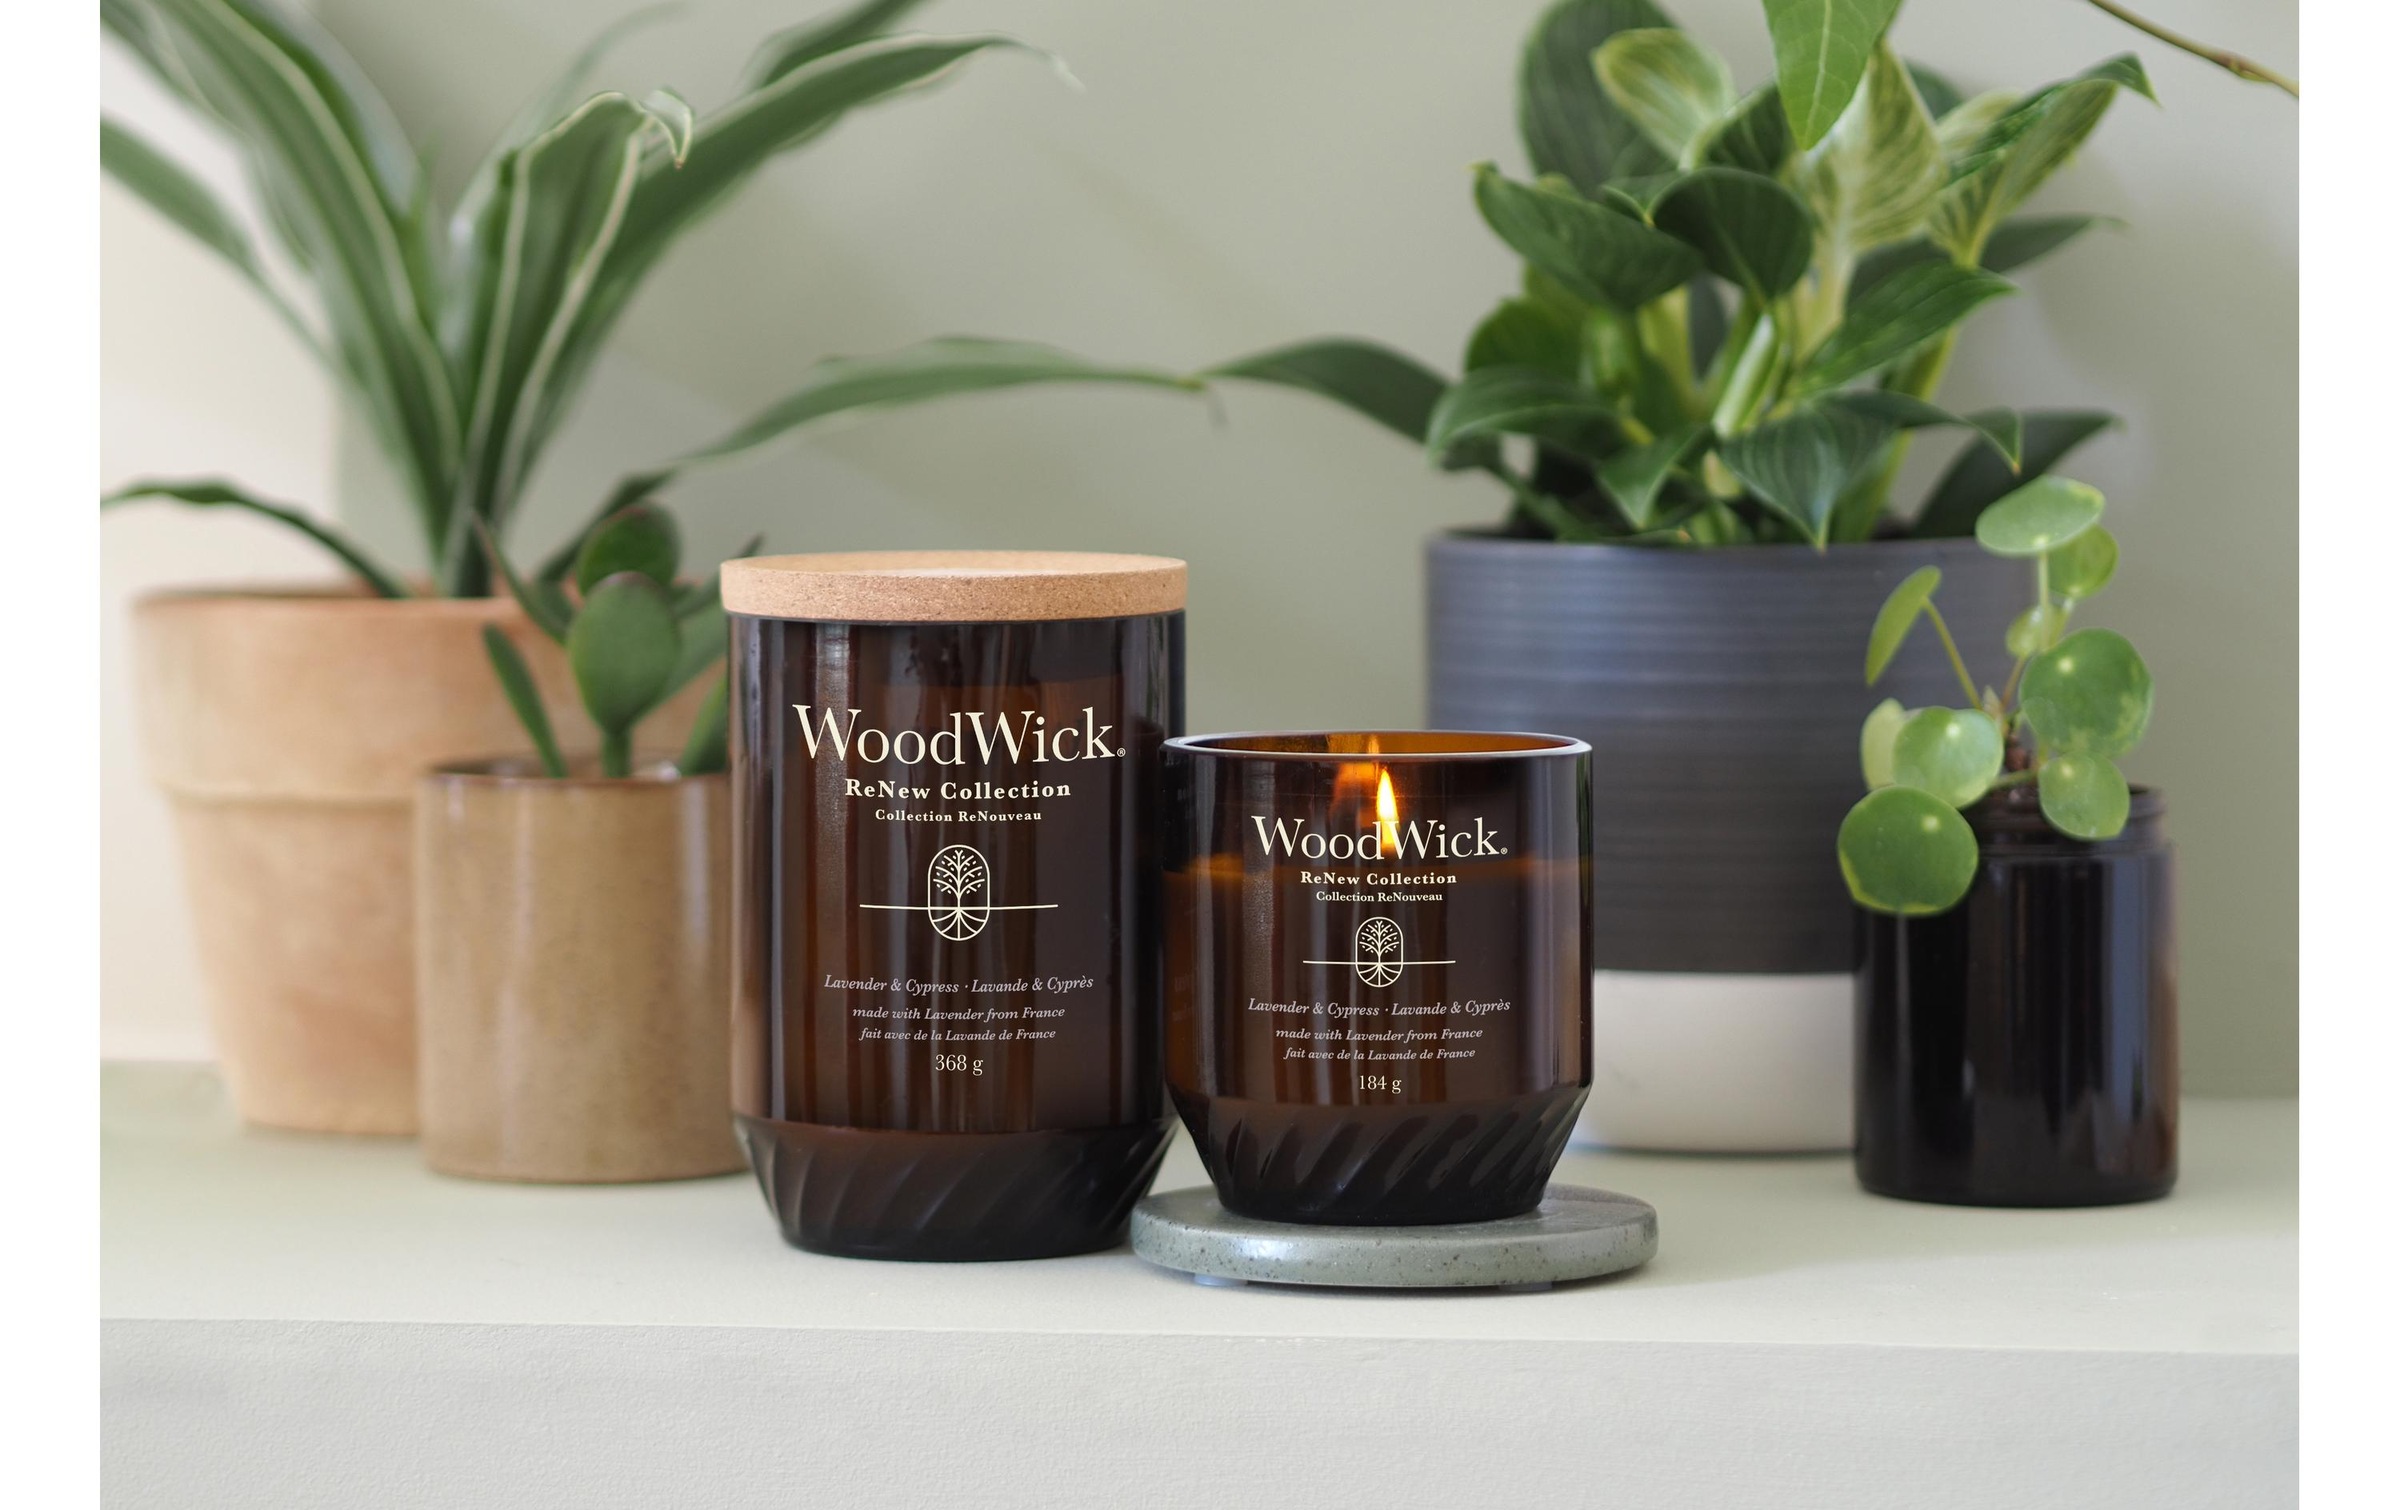 Woodwick Duftkerze »Lavender & Cypress ReNew Large Jar«